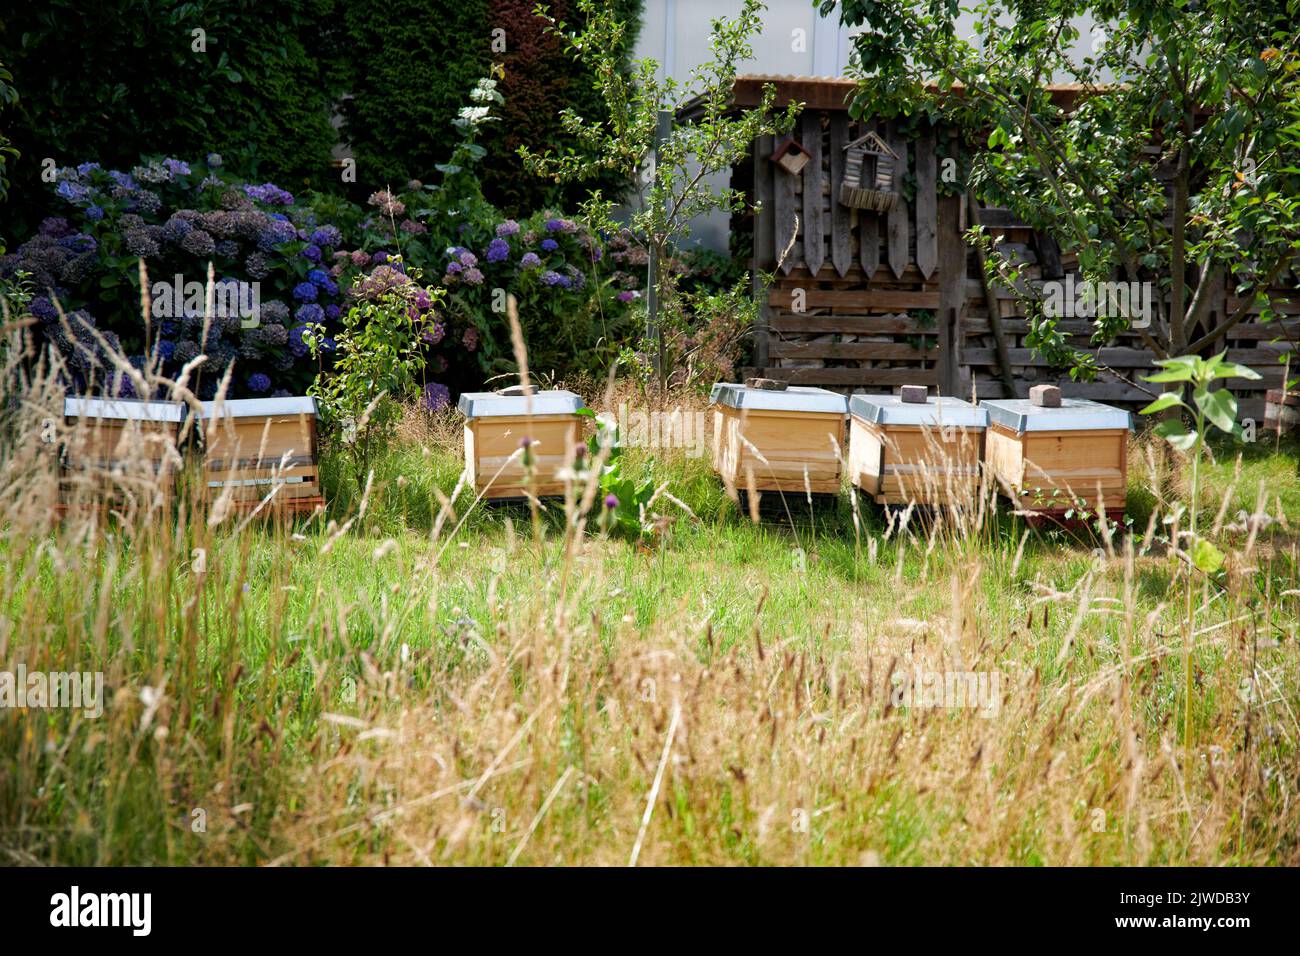 Bienenenstoecke stöhen auf einem Gartengelaende in einem Wohngebiet im hohen gras. Banque D'Images